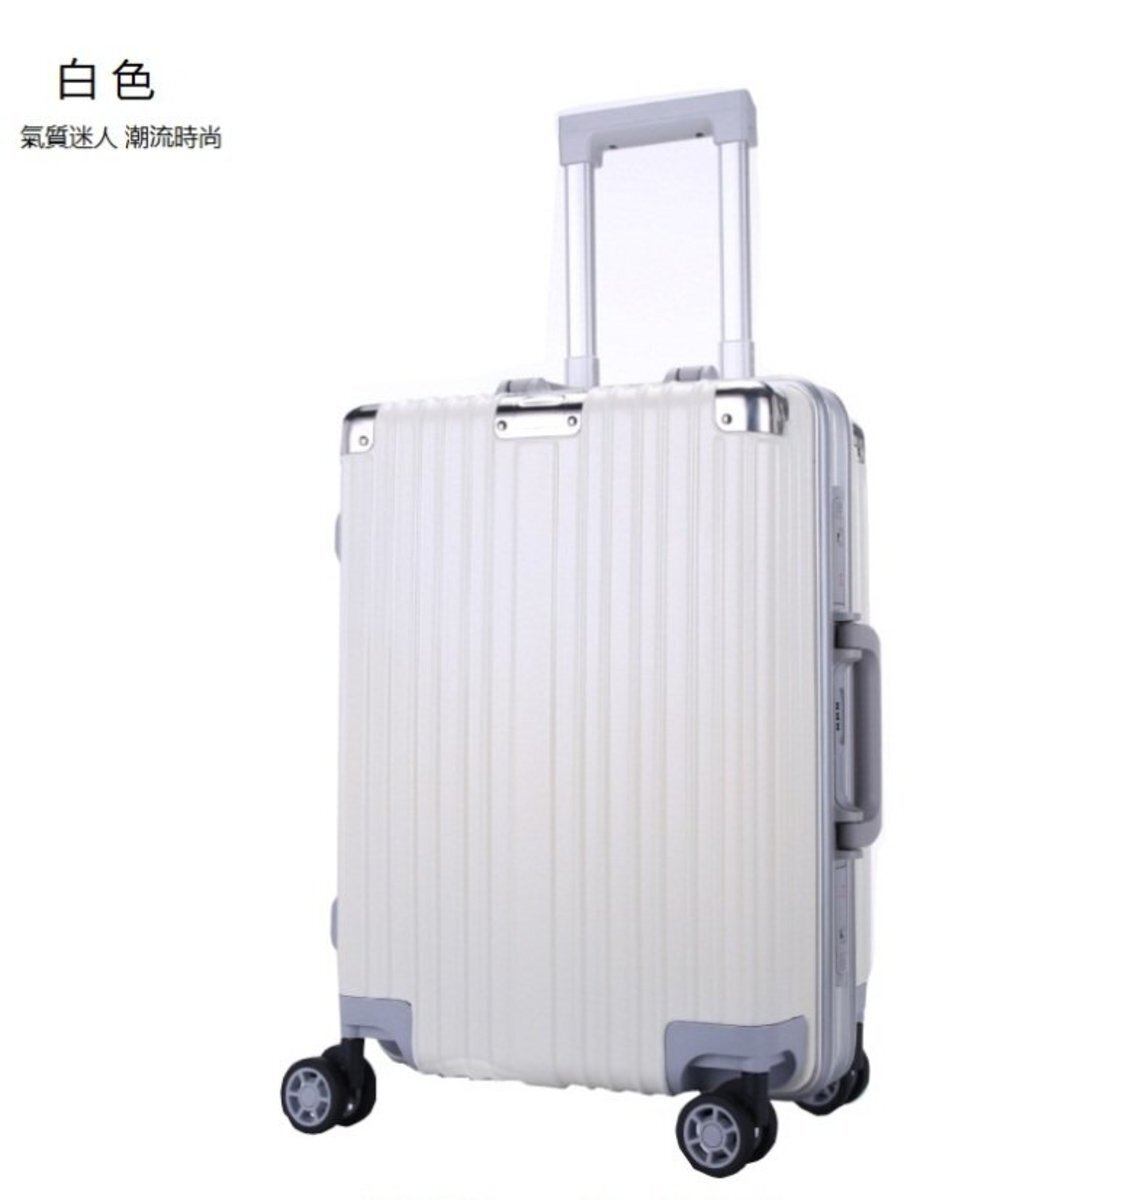 萬向輪鋁框行李箱(白色-22吋)